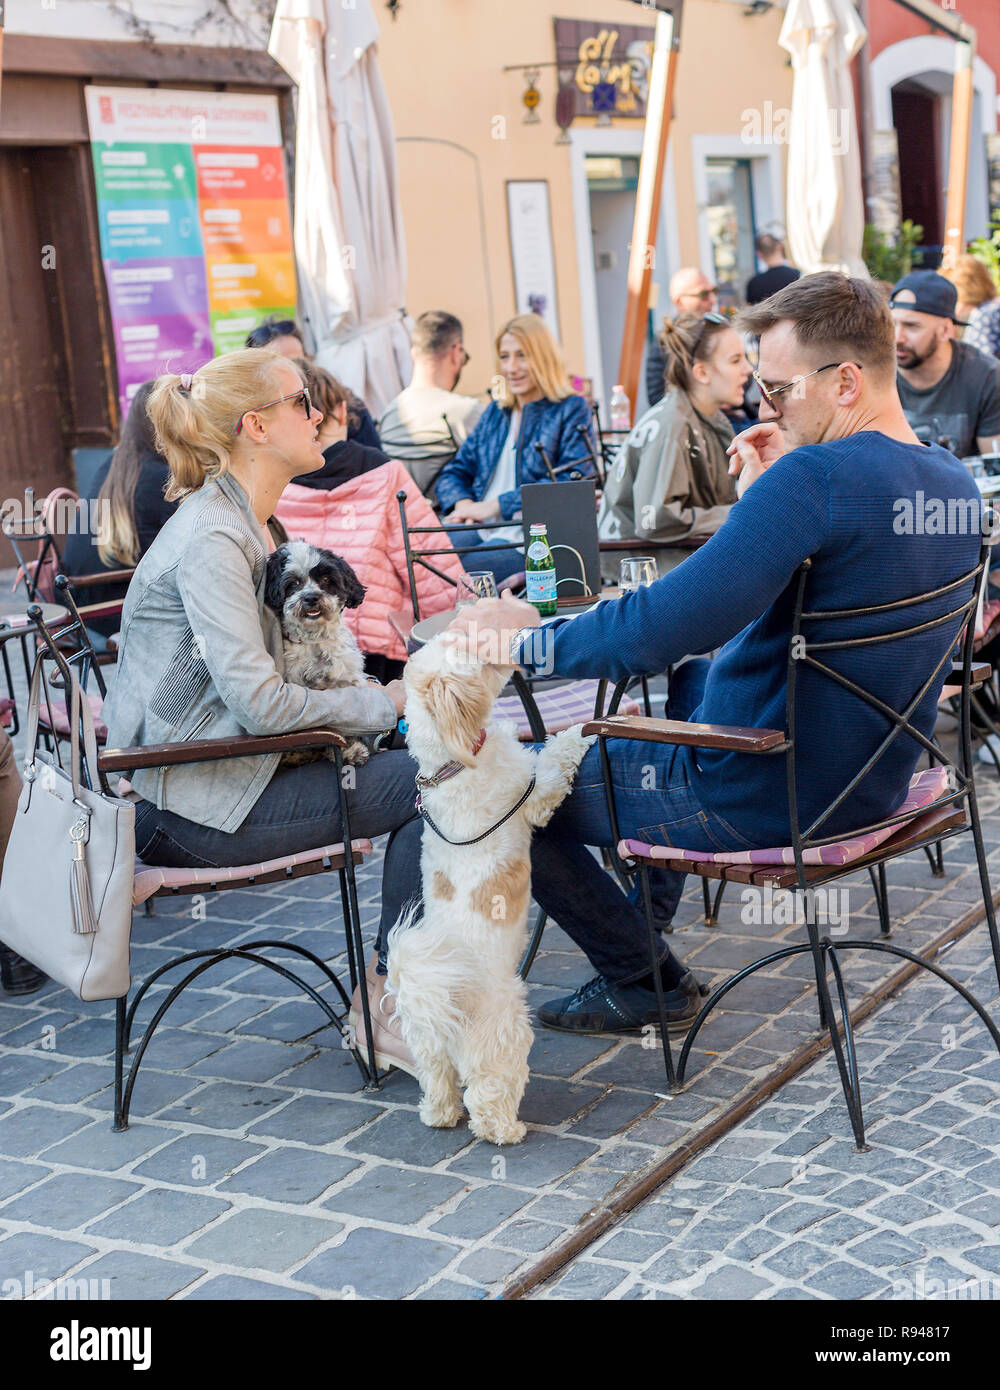 Szentendre, Hongrie - 08 Avril 2018 : café de la rue, avec des chiens au repos. La main de l'homme caressant un petit tour, tête de chien blanc avec des taches rouges dog Banque D'Images